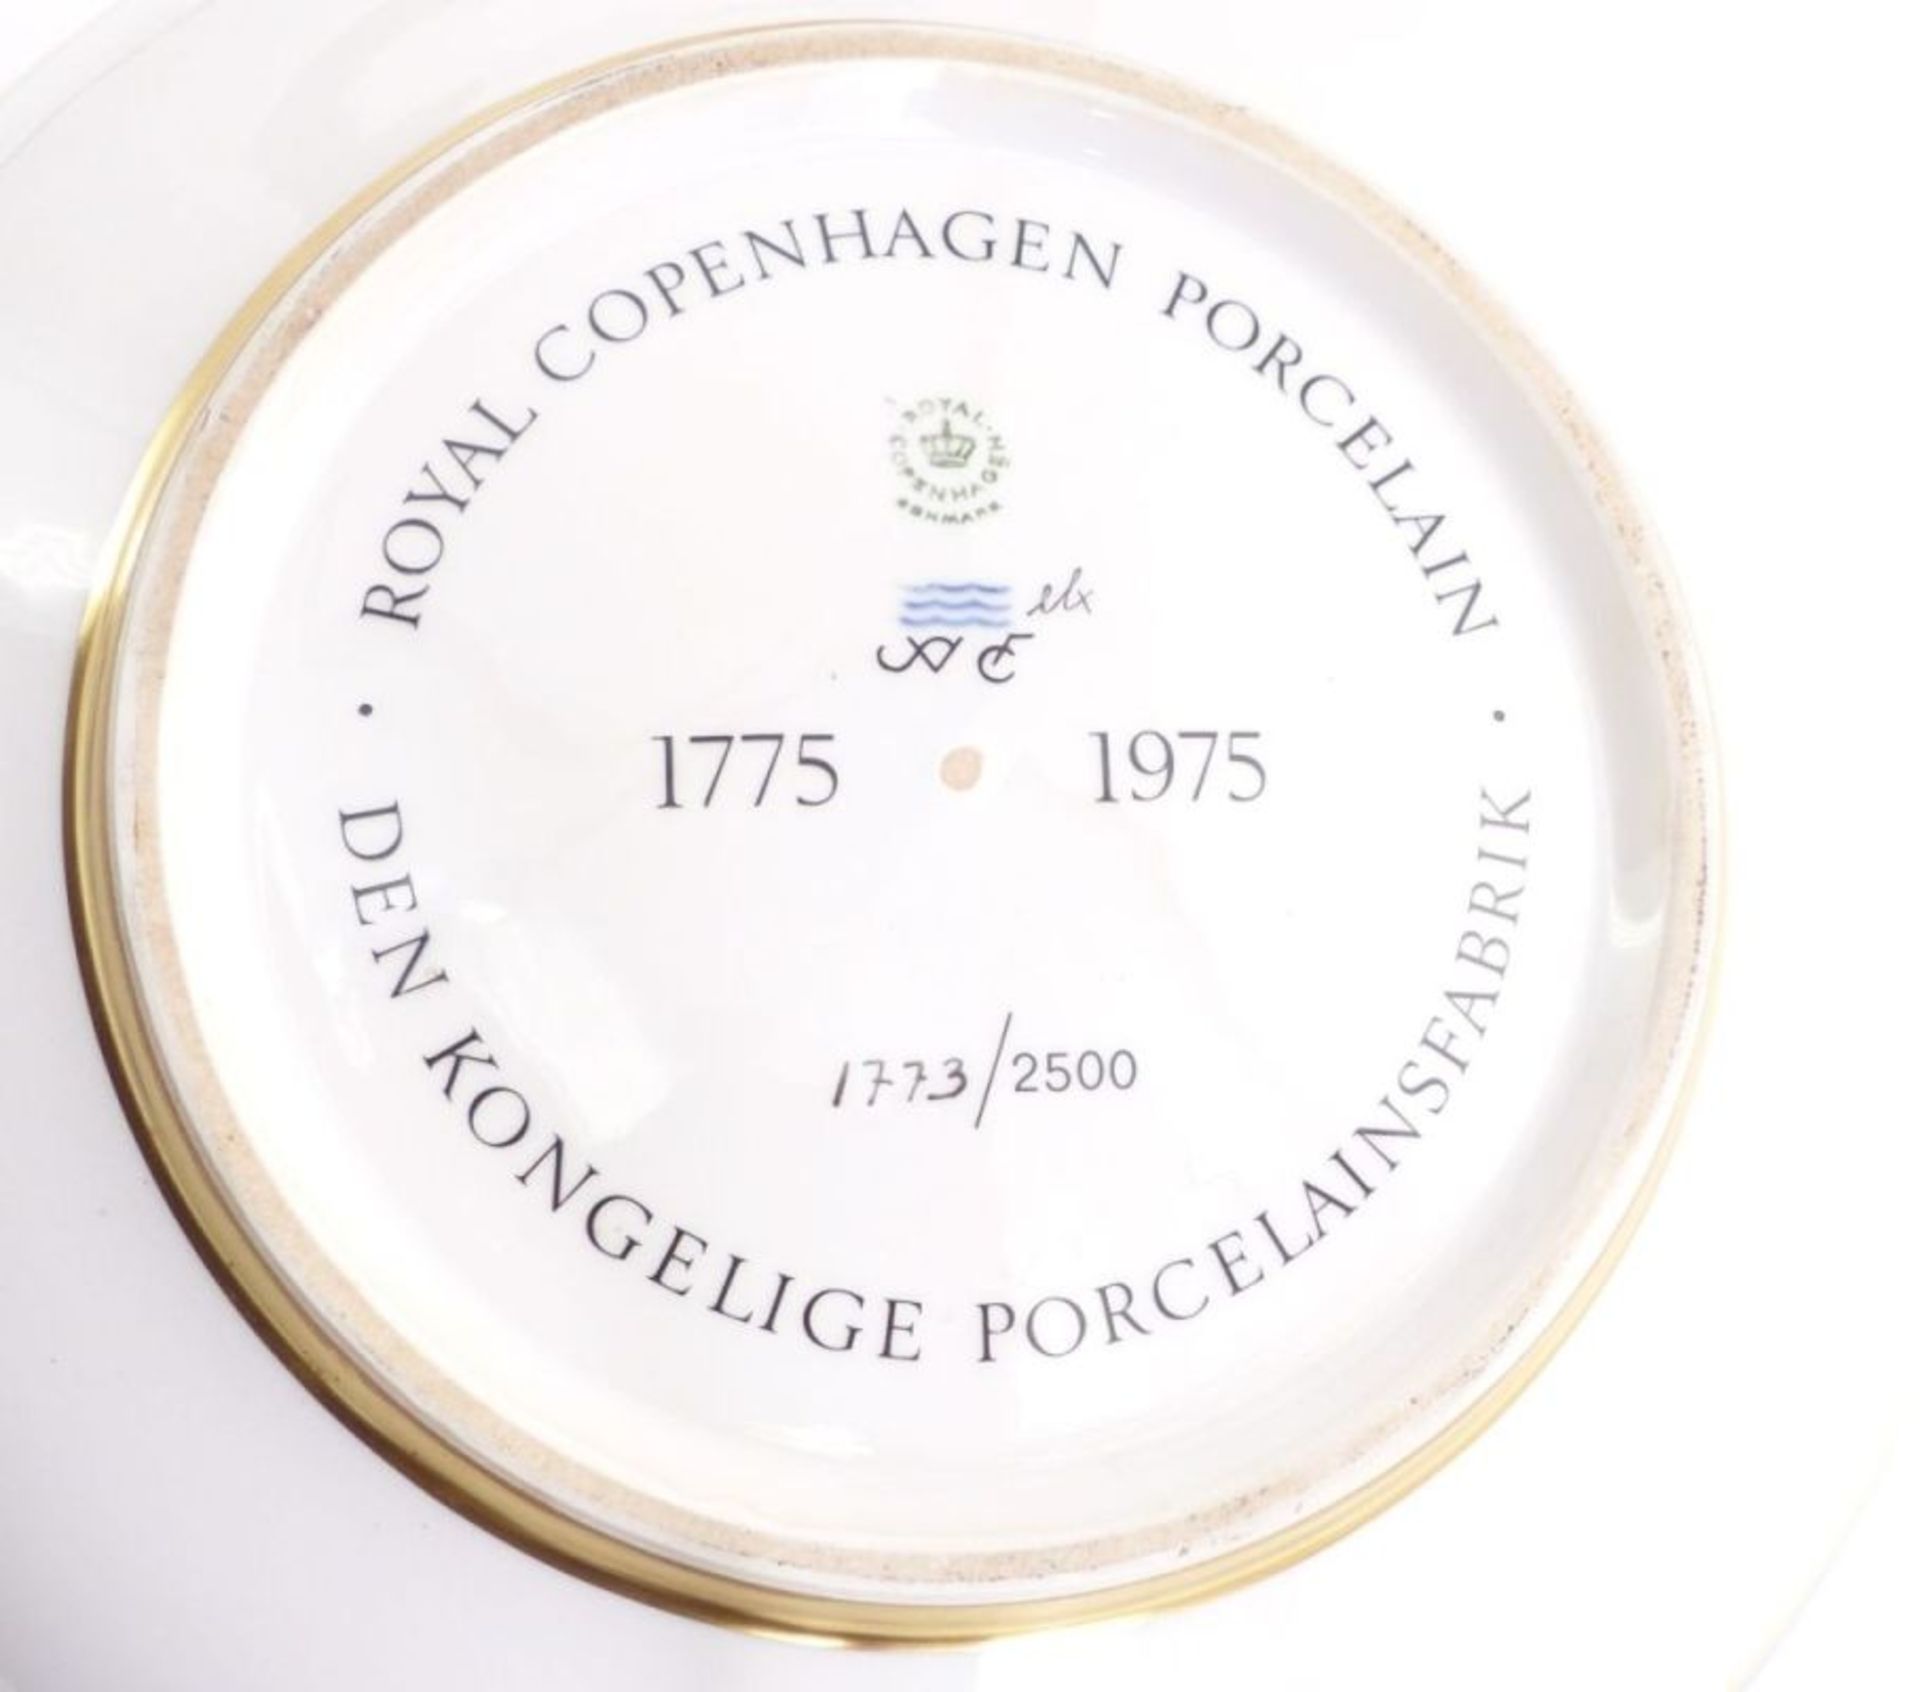 Große Schale zum 200jährigem Jubiläum der Manufaktur 1775-1975, Royal Copenhagen, 1975 - Image 4 of 6